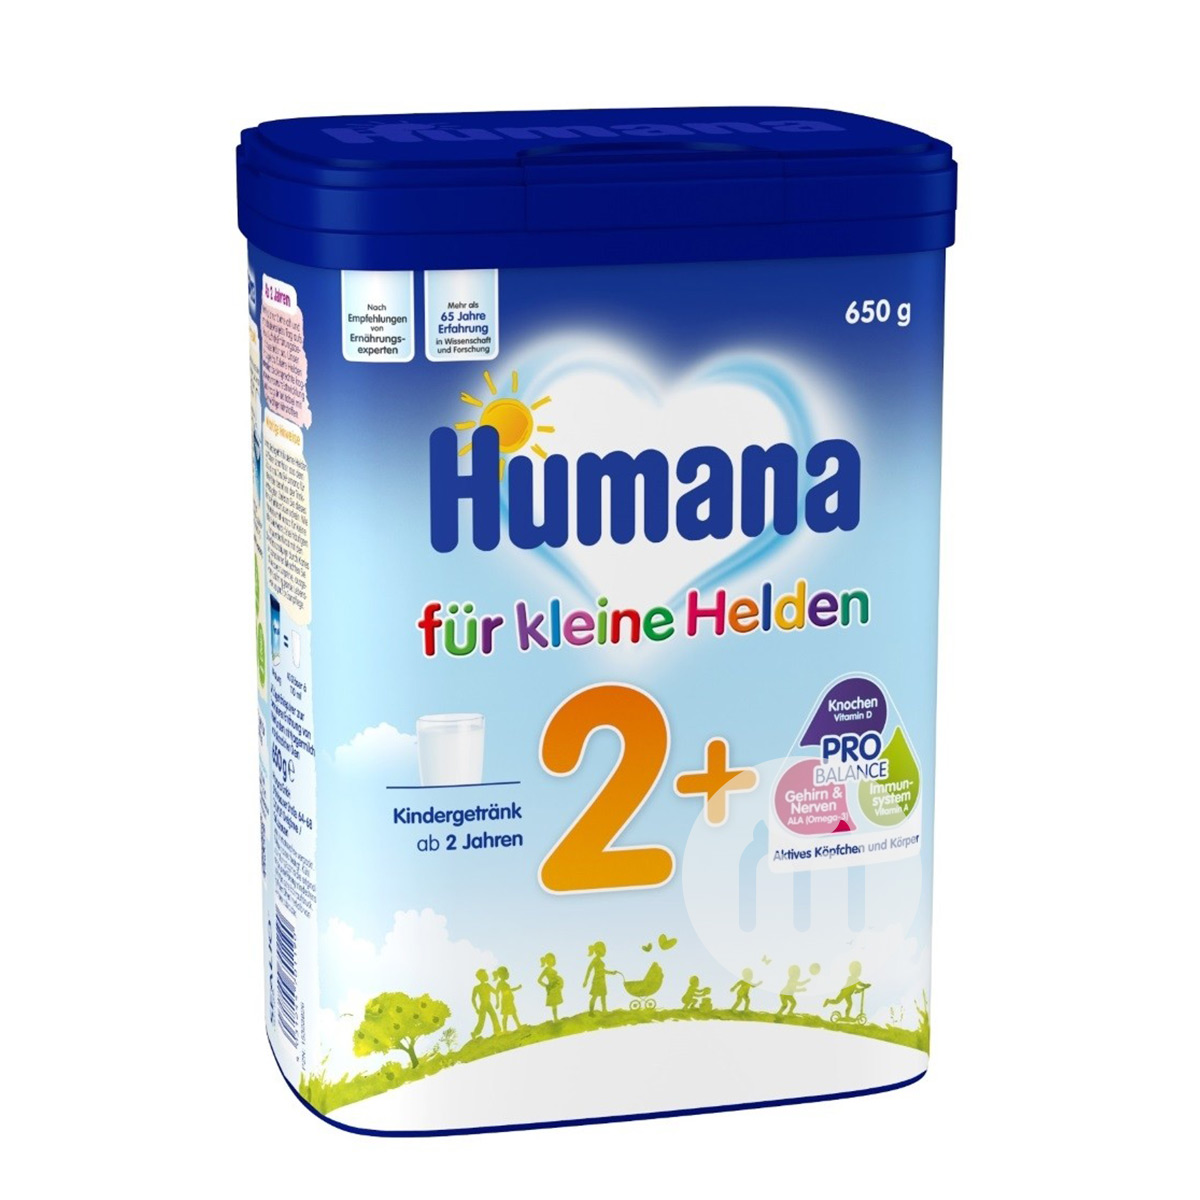 Humanaドイツ瑚玛娜ベビーミルク2+段650 g*4箱